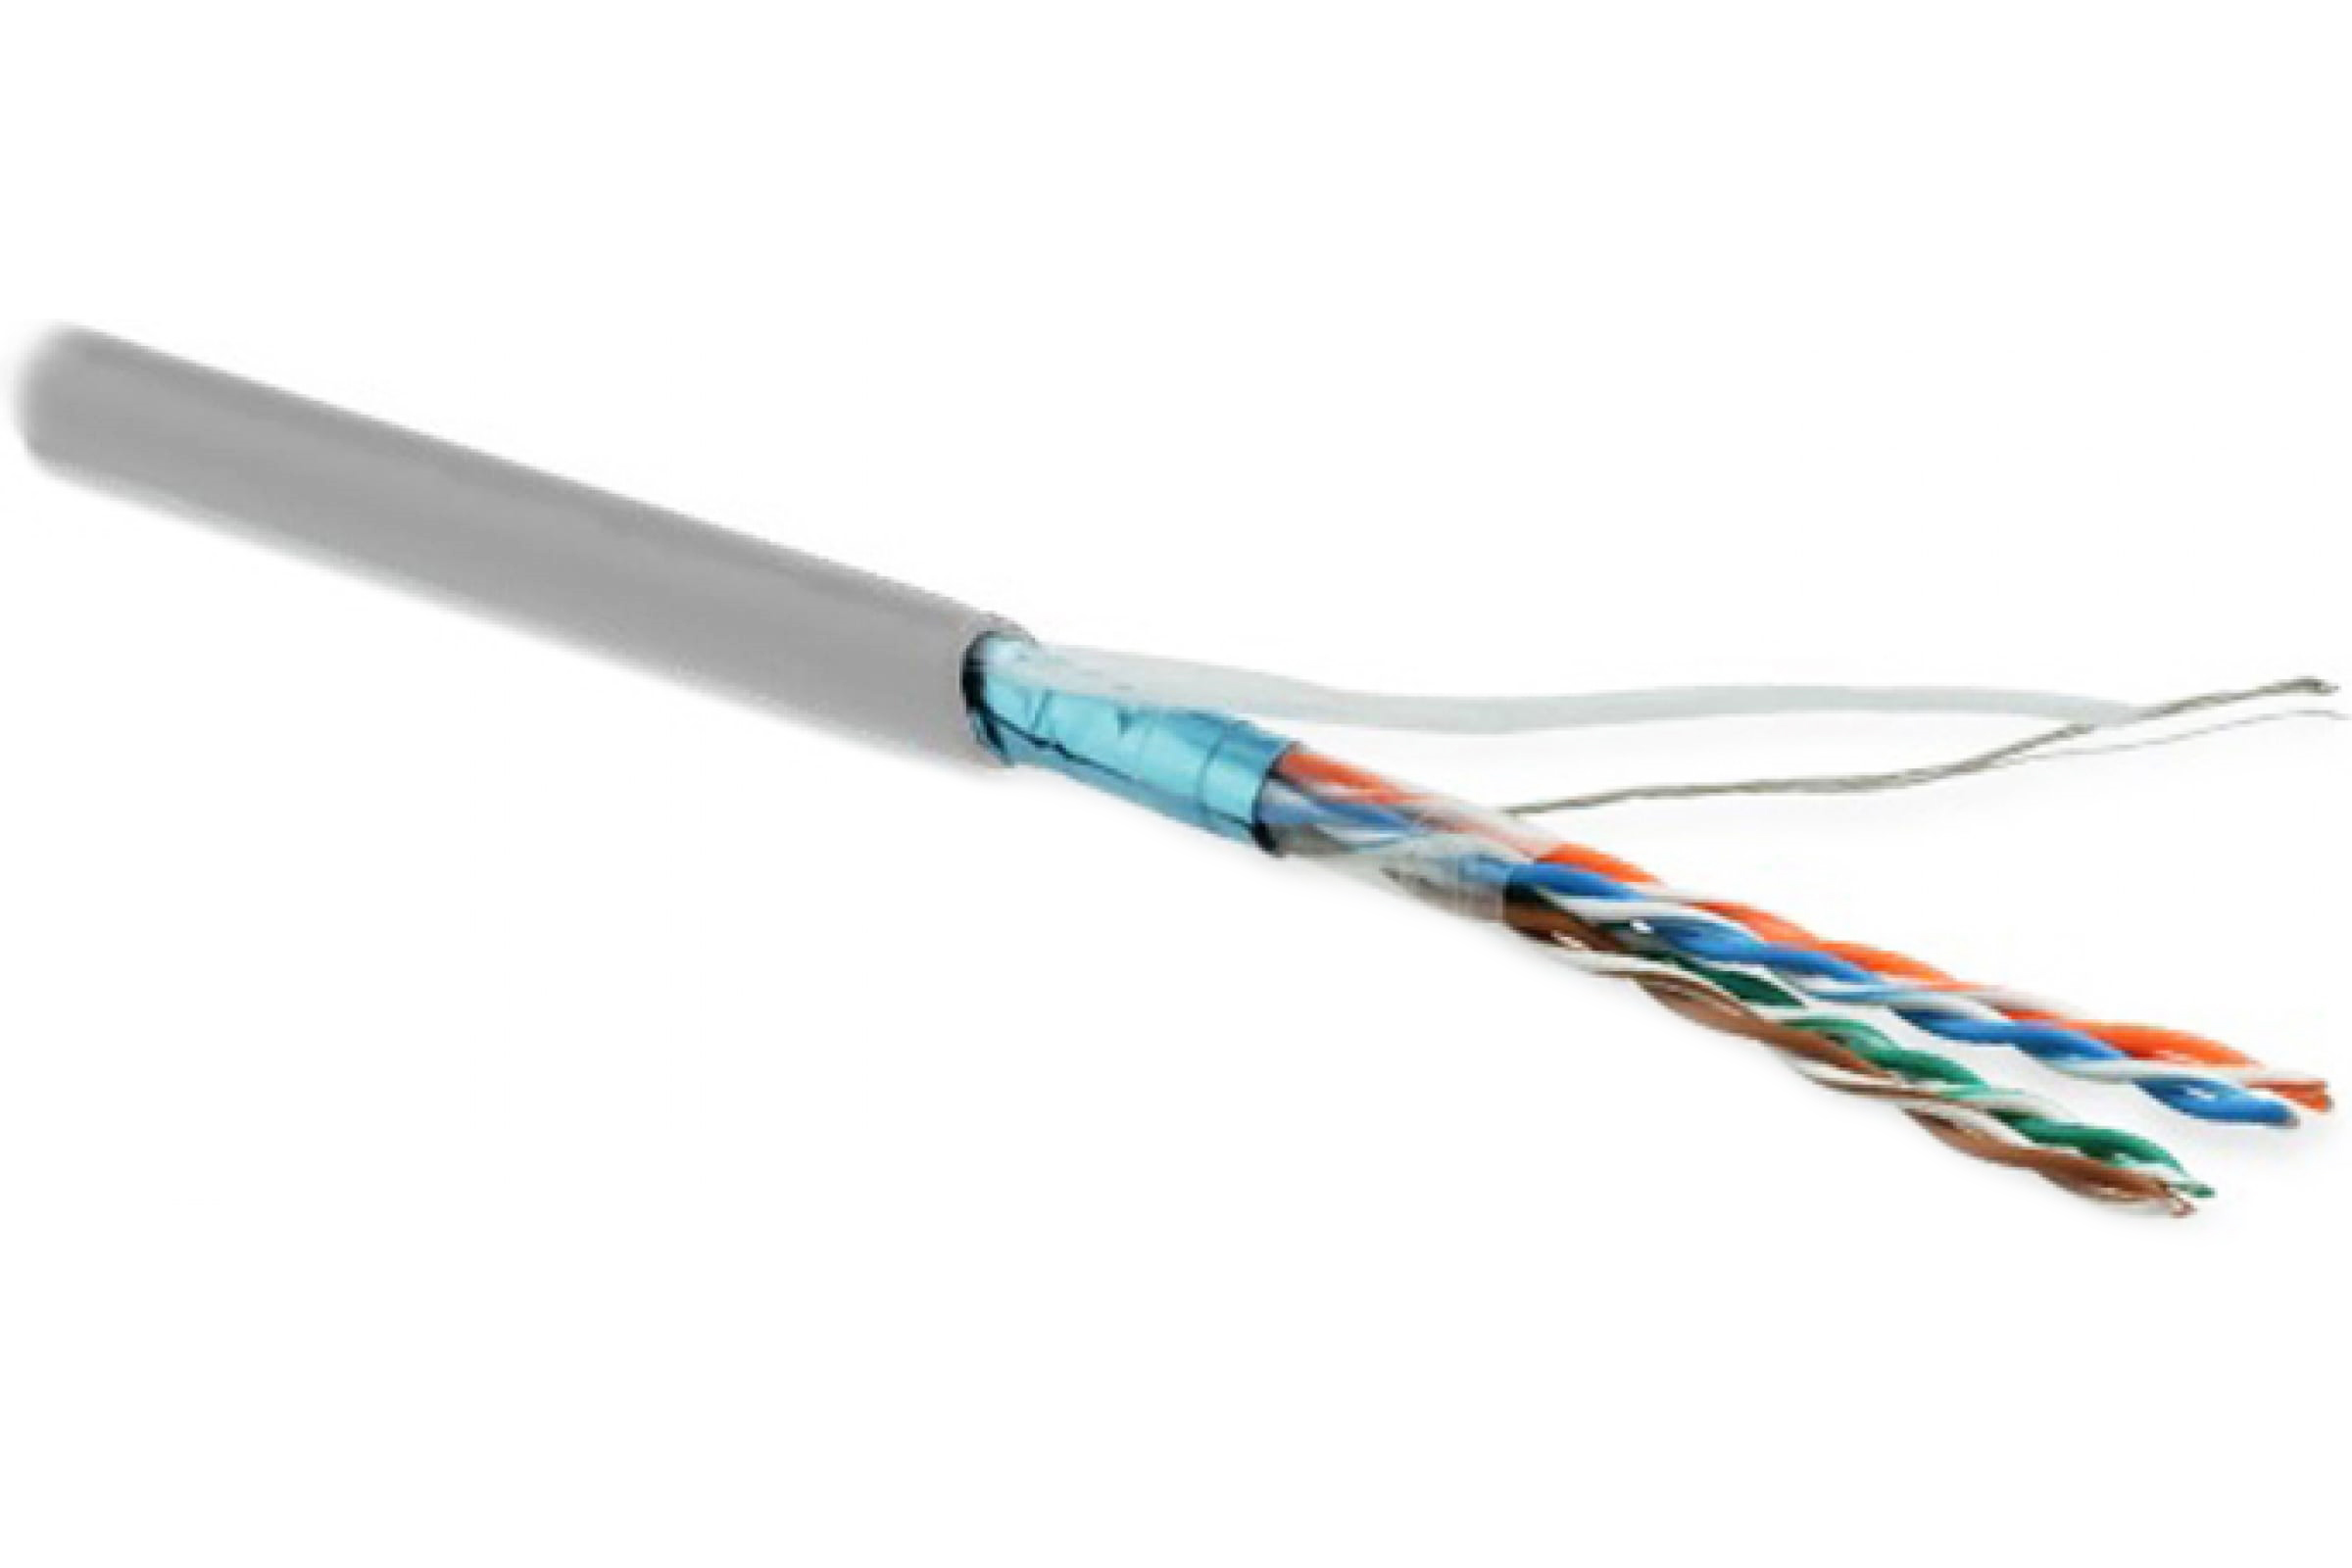 Кабель Hyperline кабель сетевой без разъемов 100м (243623) кабель для компьютера hyperline futp4 c5e s24 in lszh or 305